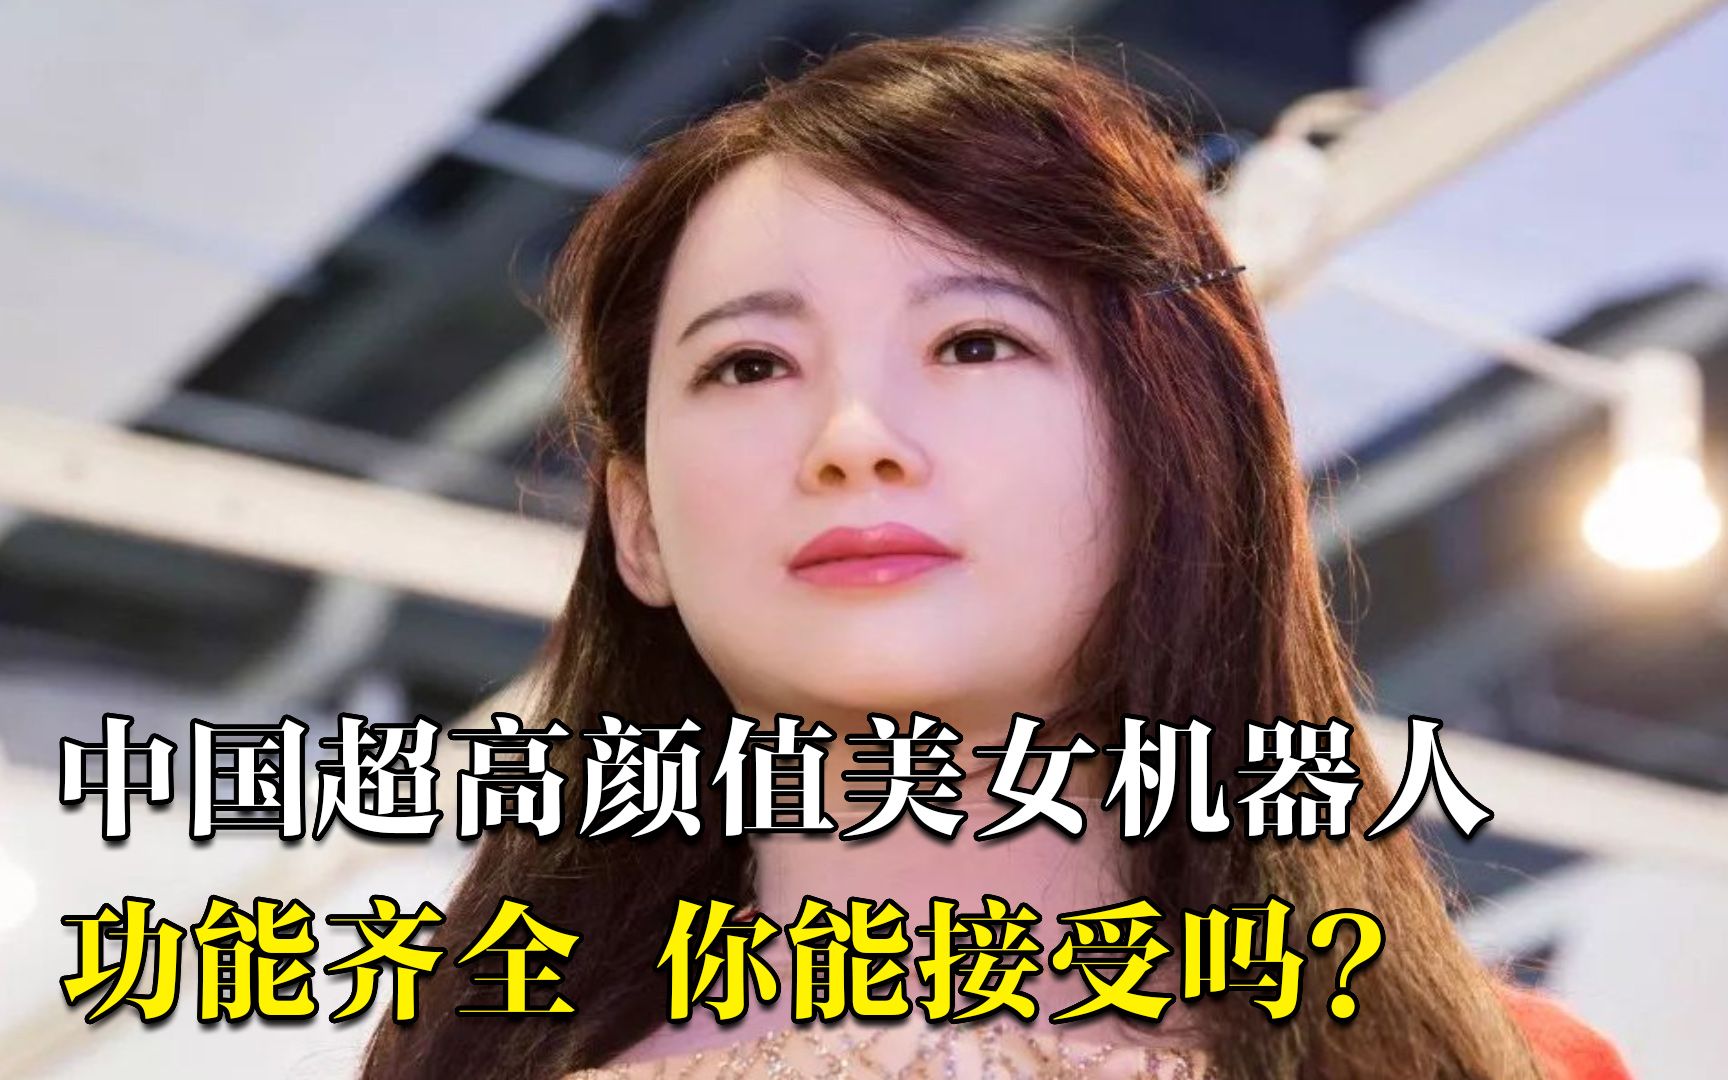 中国第一台美女机器人肤白貌美功能齐全拥有女友一切功能